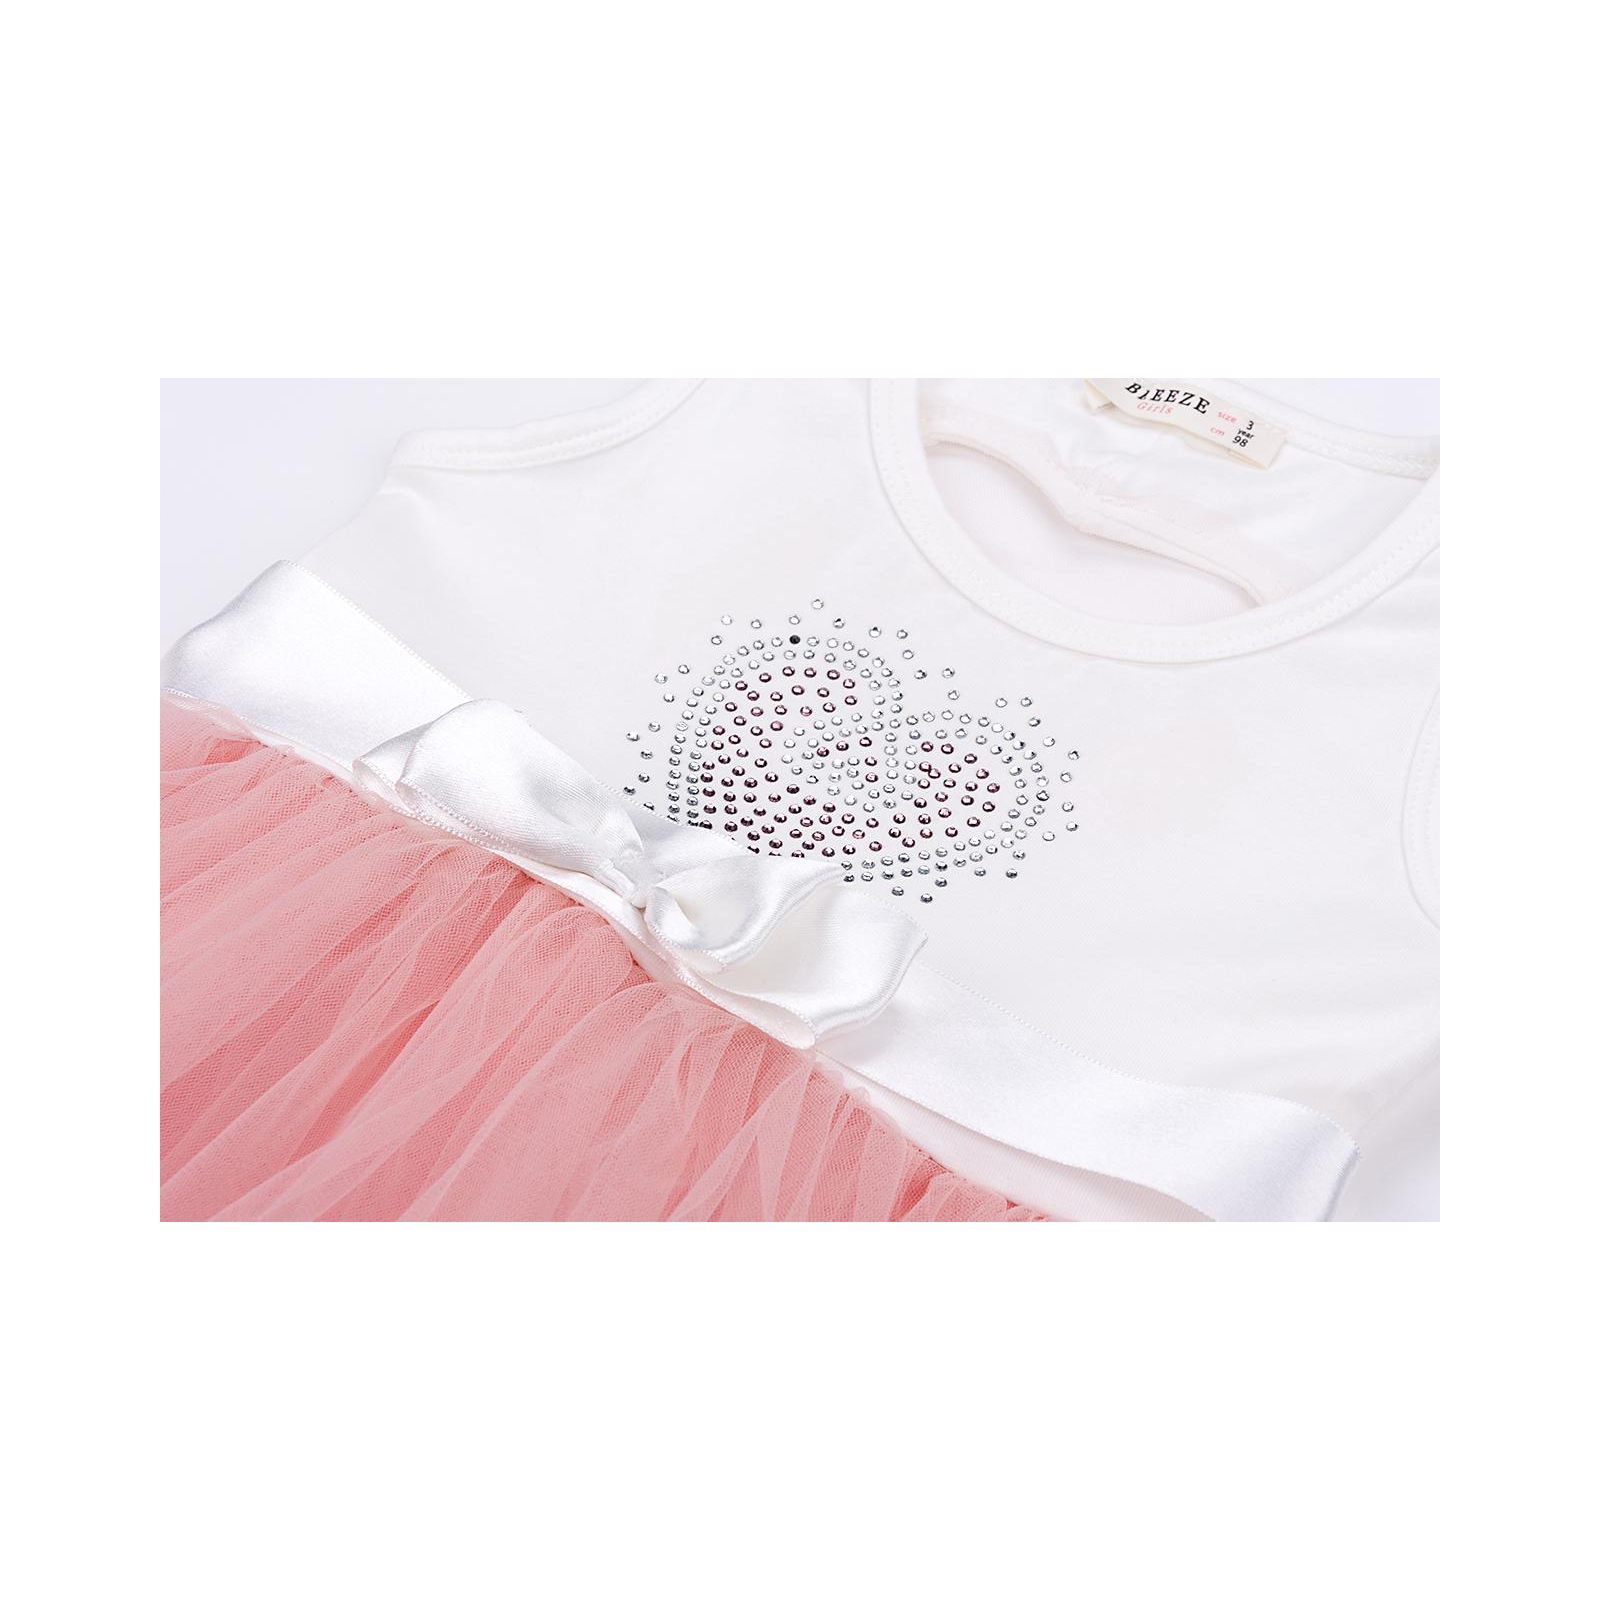 Платье Breeze сарафан с фатиновой юбкой и сердцем (10862-104G-pink) изображение 5